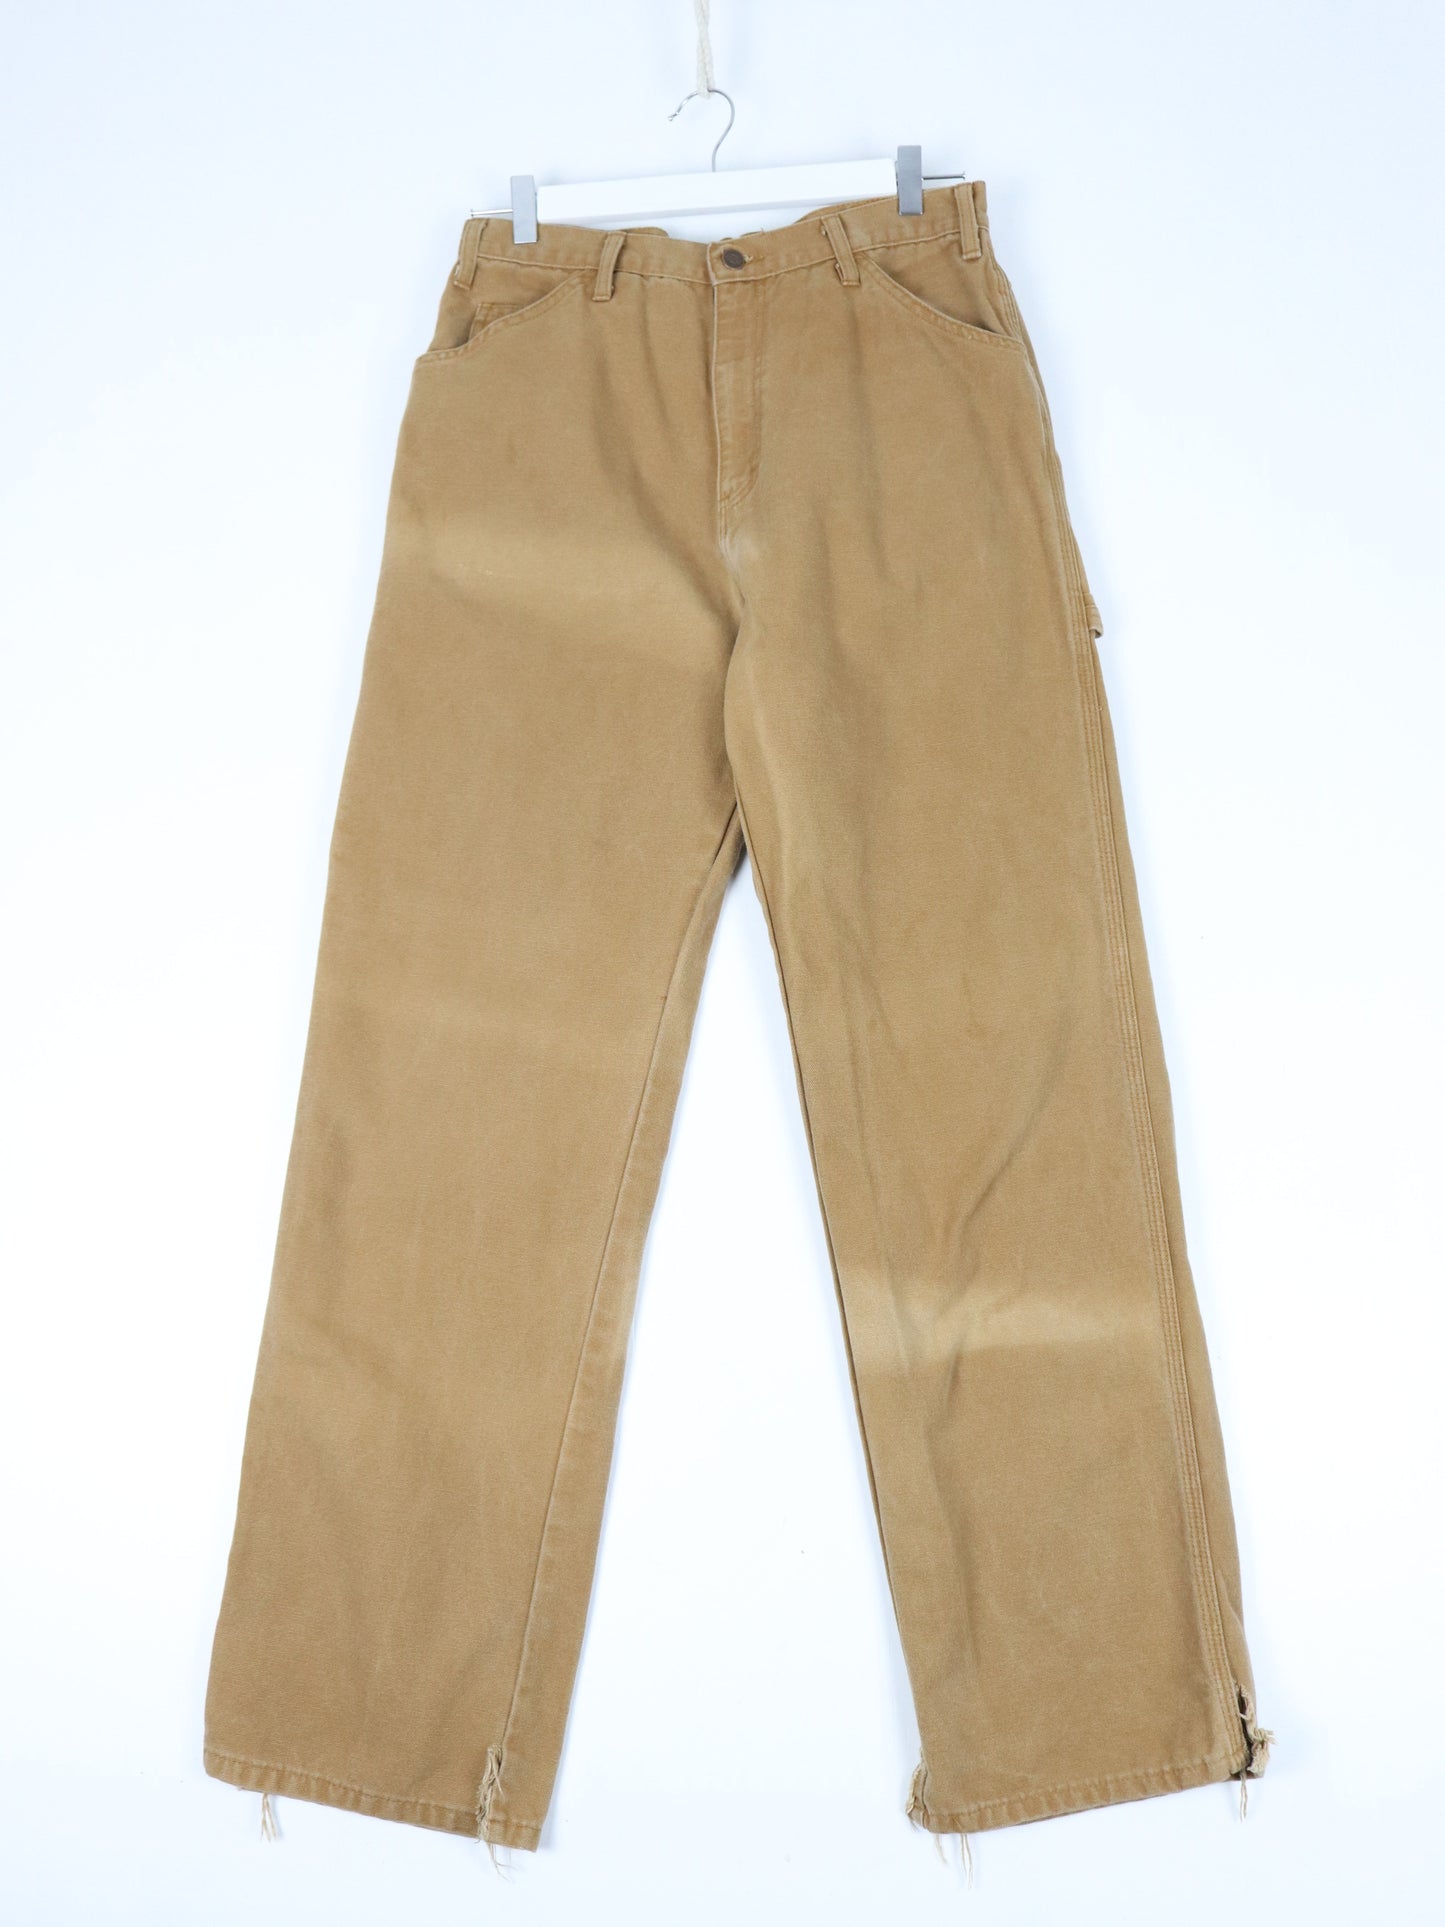 Dickies Pants Fits Mens 30 x 31 Brown Work Wear Carpenters